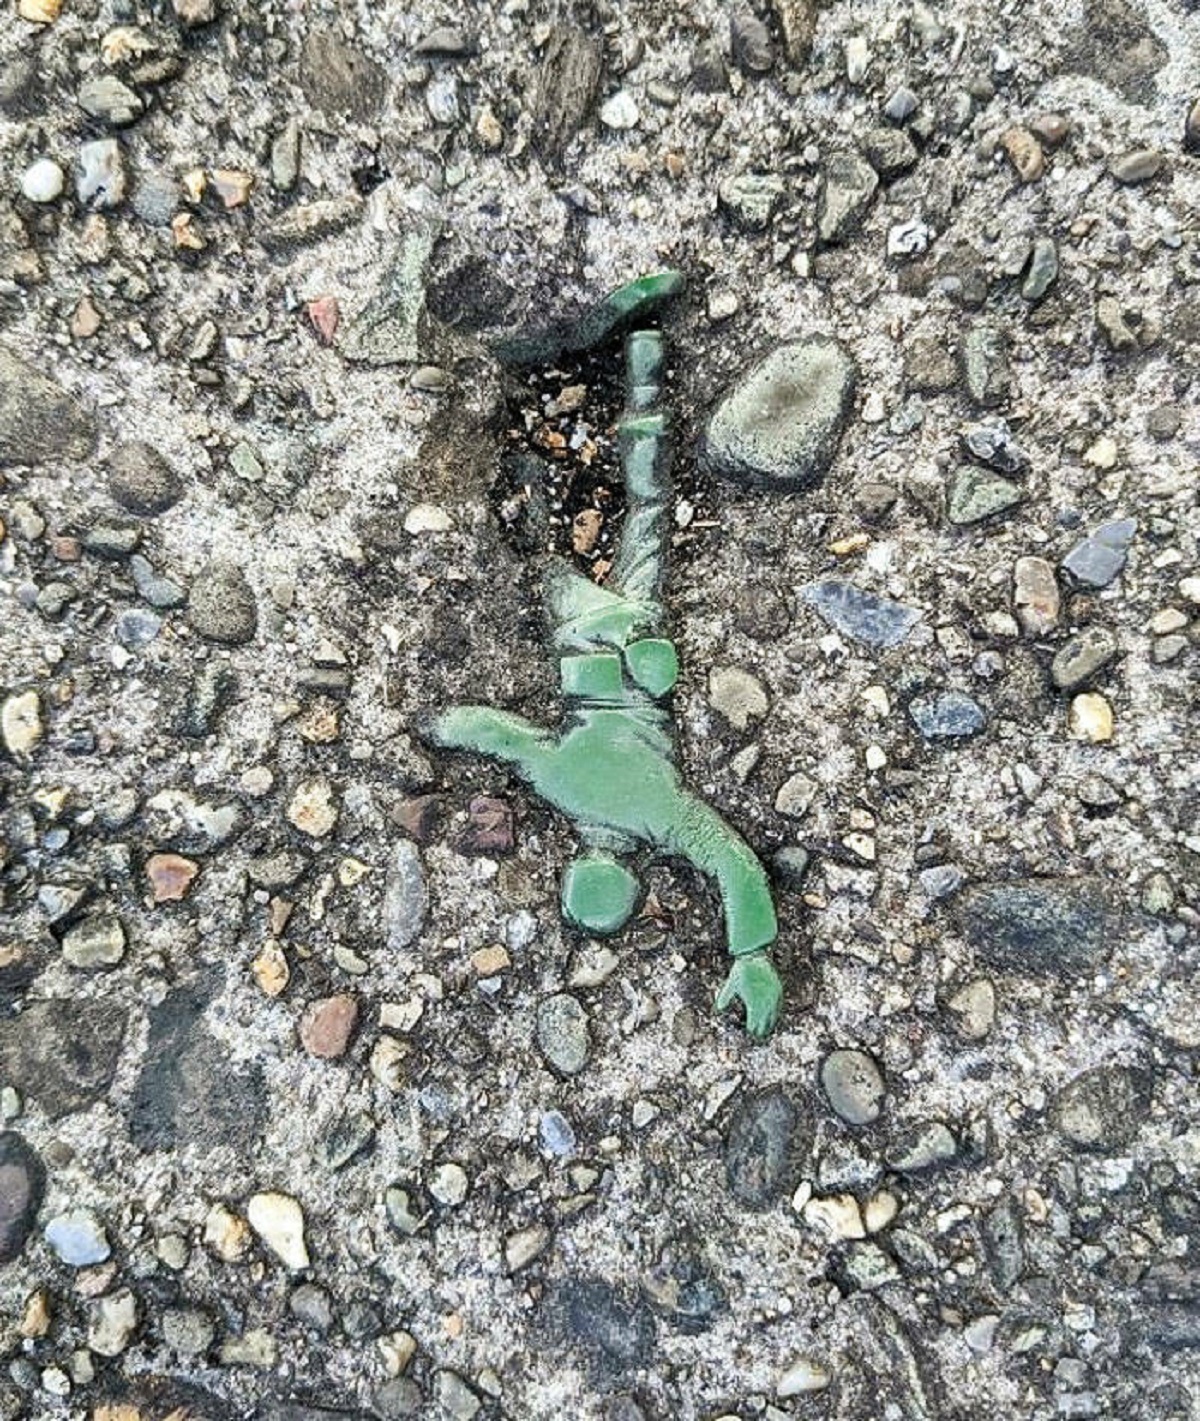 "Today On My Walk I Found An "Army Man" Embedded In The Sidewalk"